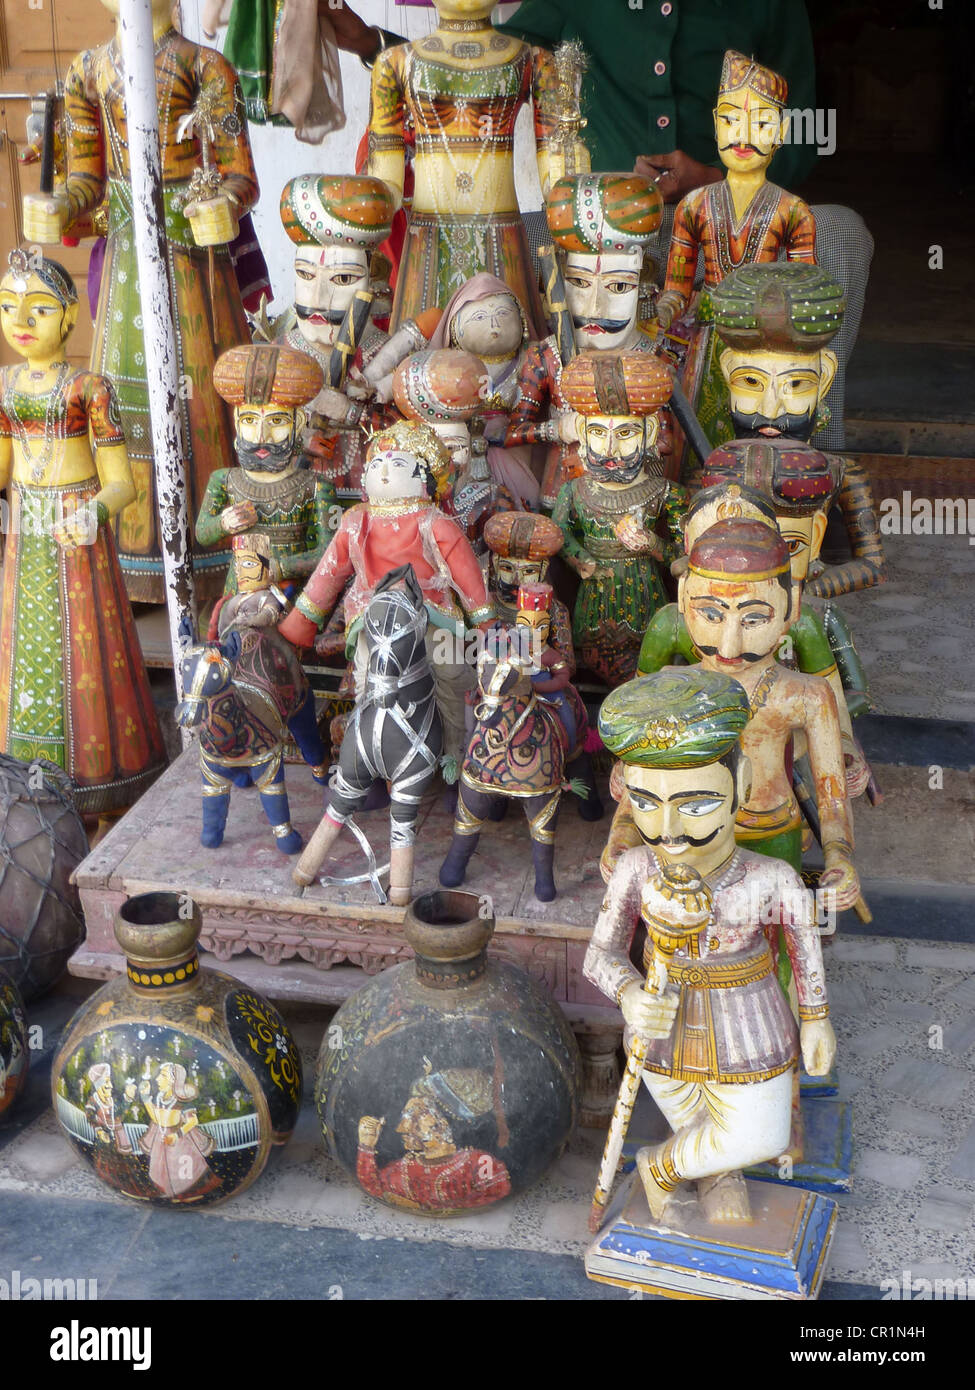 Puppen und Marionetten der Rajput Fürsten in Udaipur Marktplatz, Rajasthan, Indien, Asien Stockfoto